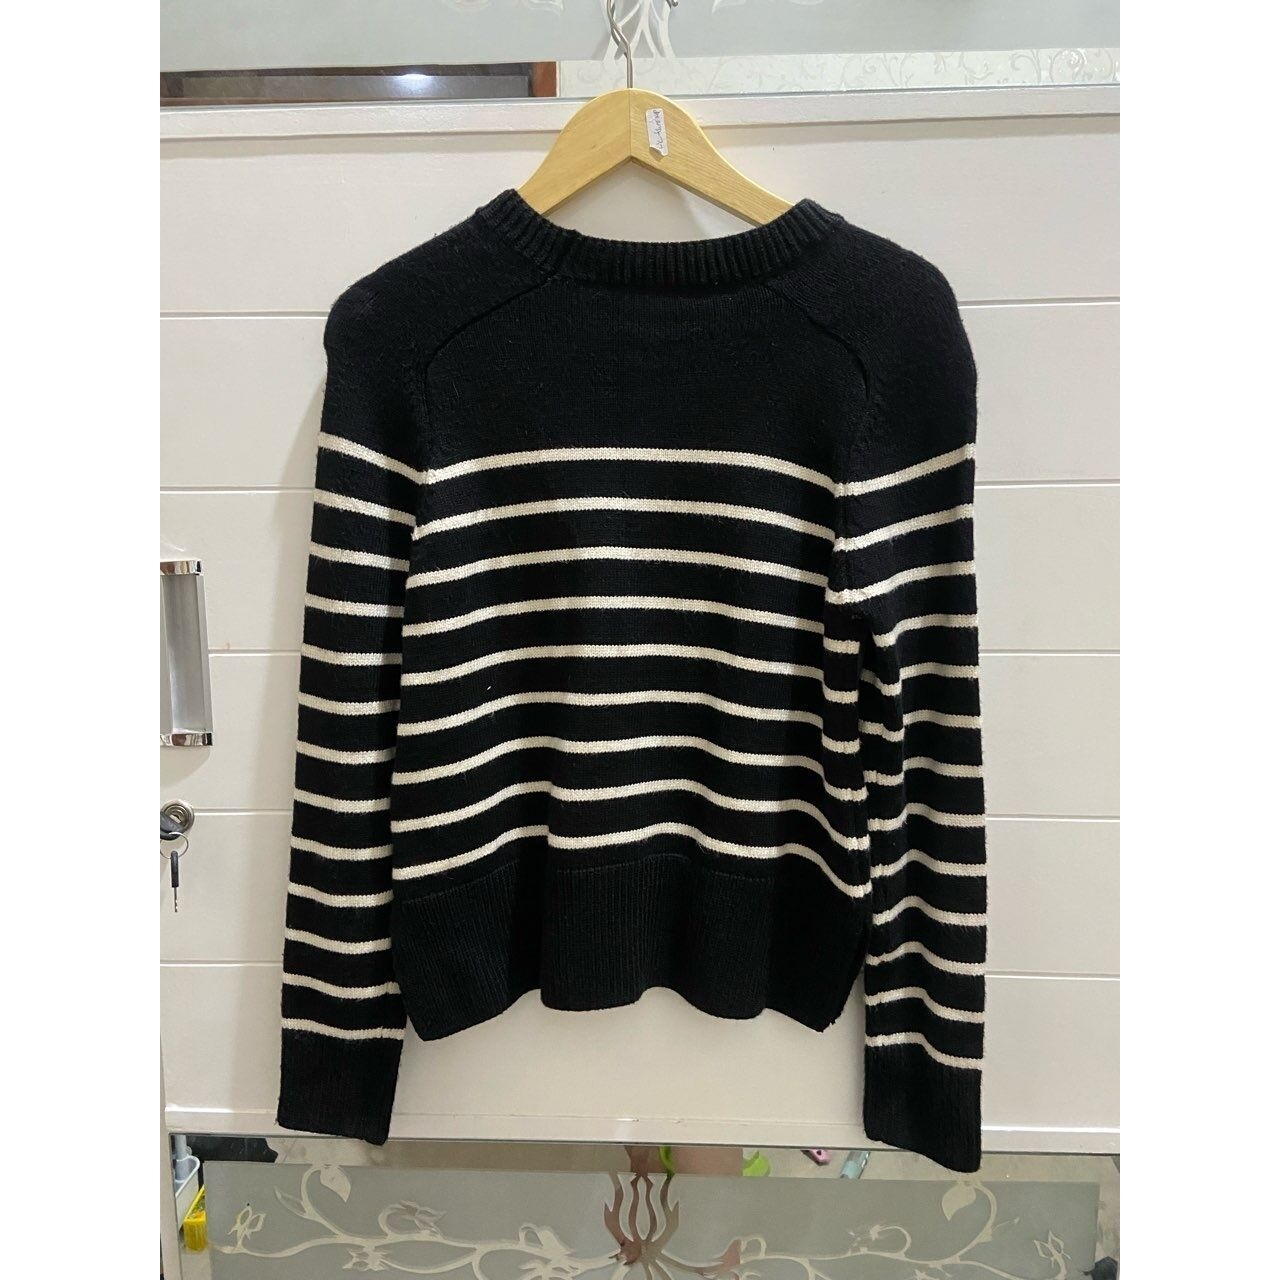 Zara Striped Knit Sweater